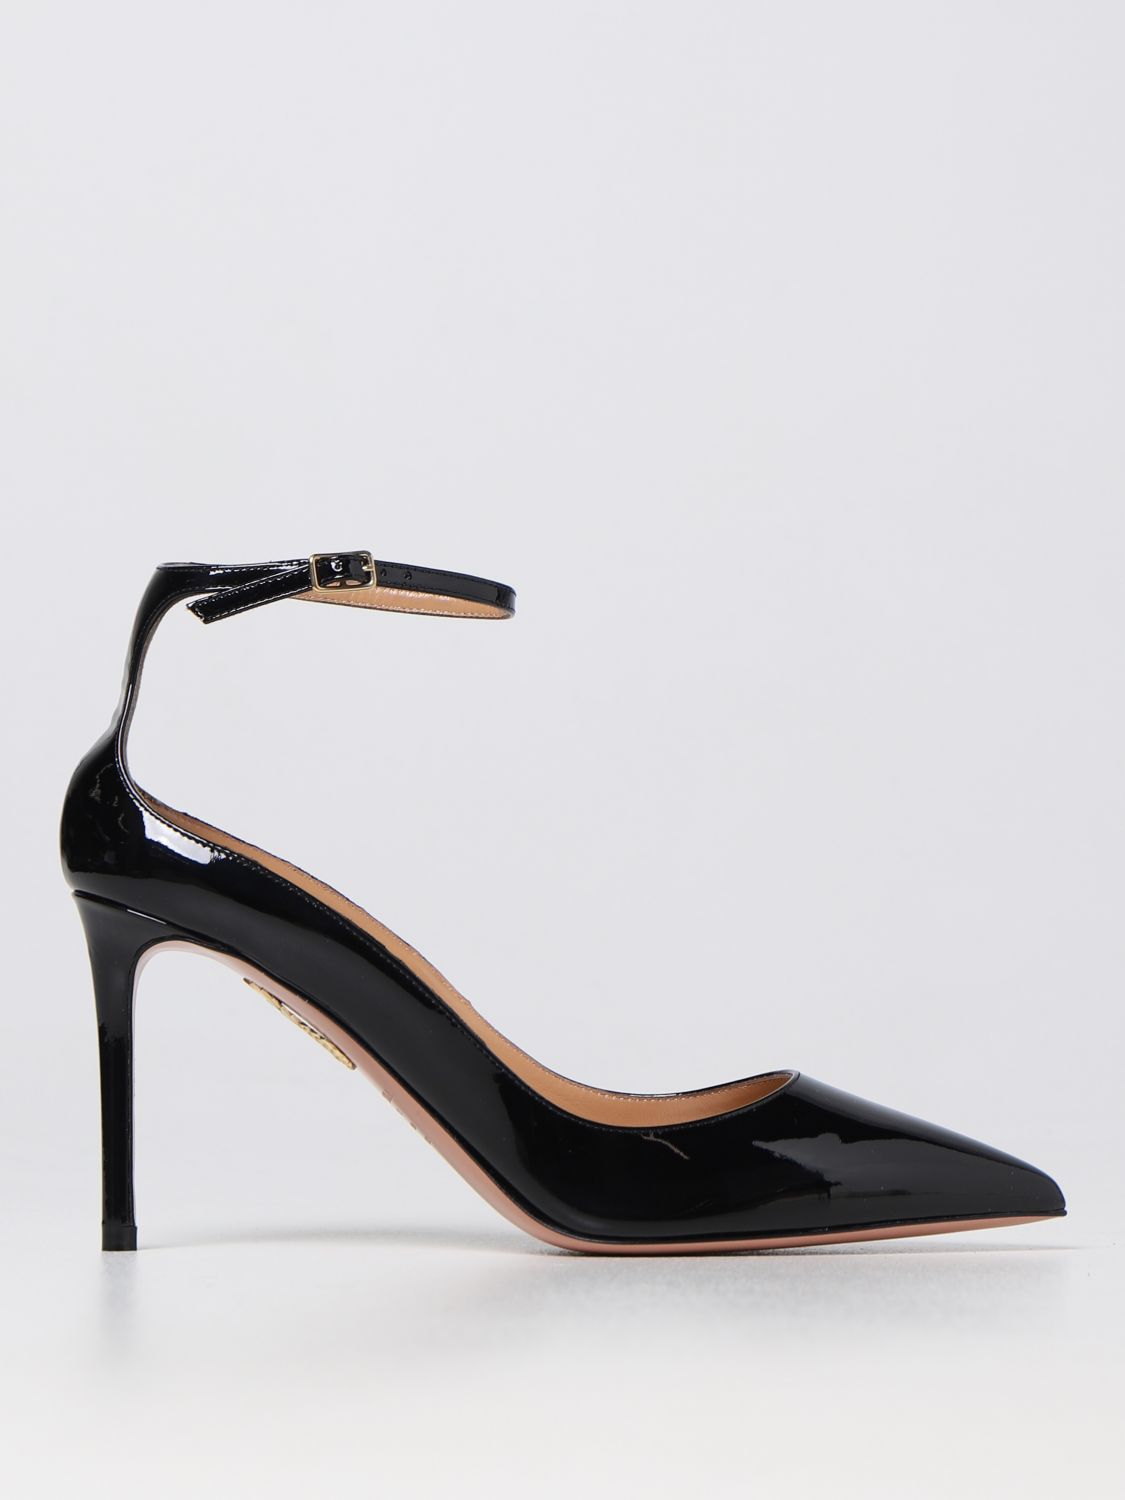 AQUAZZURA: high heel shoes for woman - Black | Aquazzura high heel ...